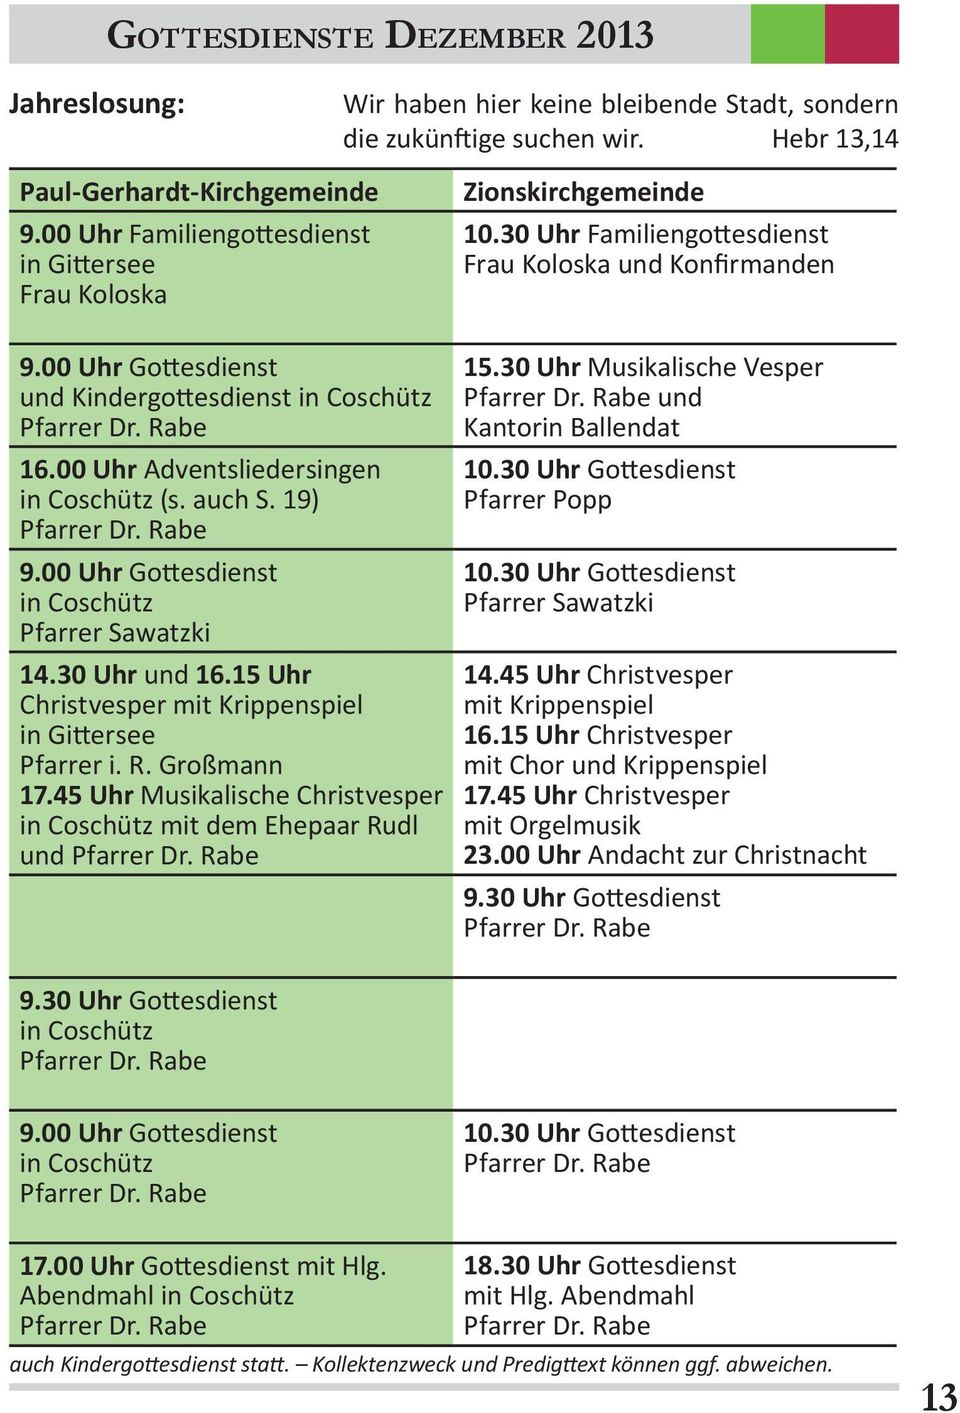 00 Uhr Adventsliedersingen in Coschütz (s. auch S. 19) 9.00 Uhr Gottesdienst in Coschütz 14.30 Uhr und 16.15 Uhr Christvesper mit Krippenspiel in Gittersee Pfarrer i. R. Großmann 17.